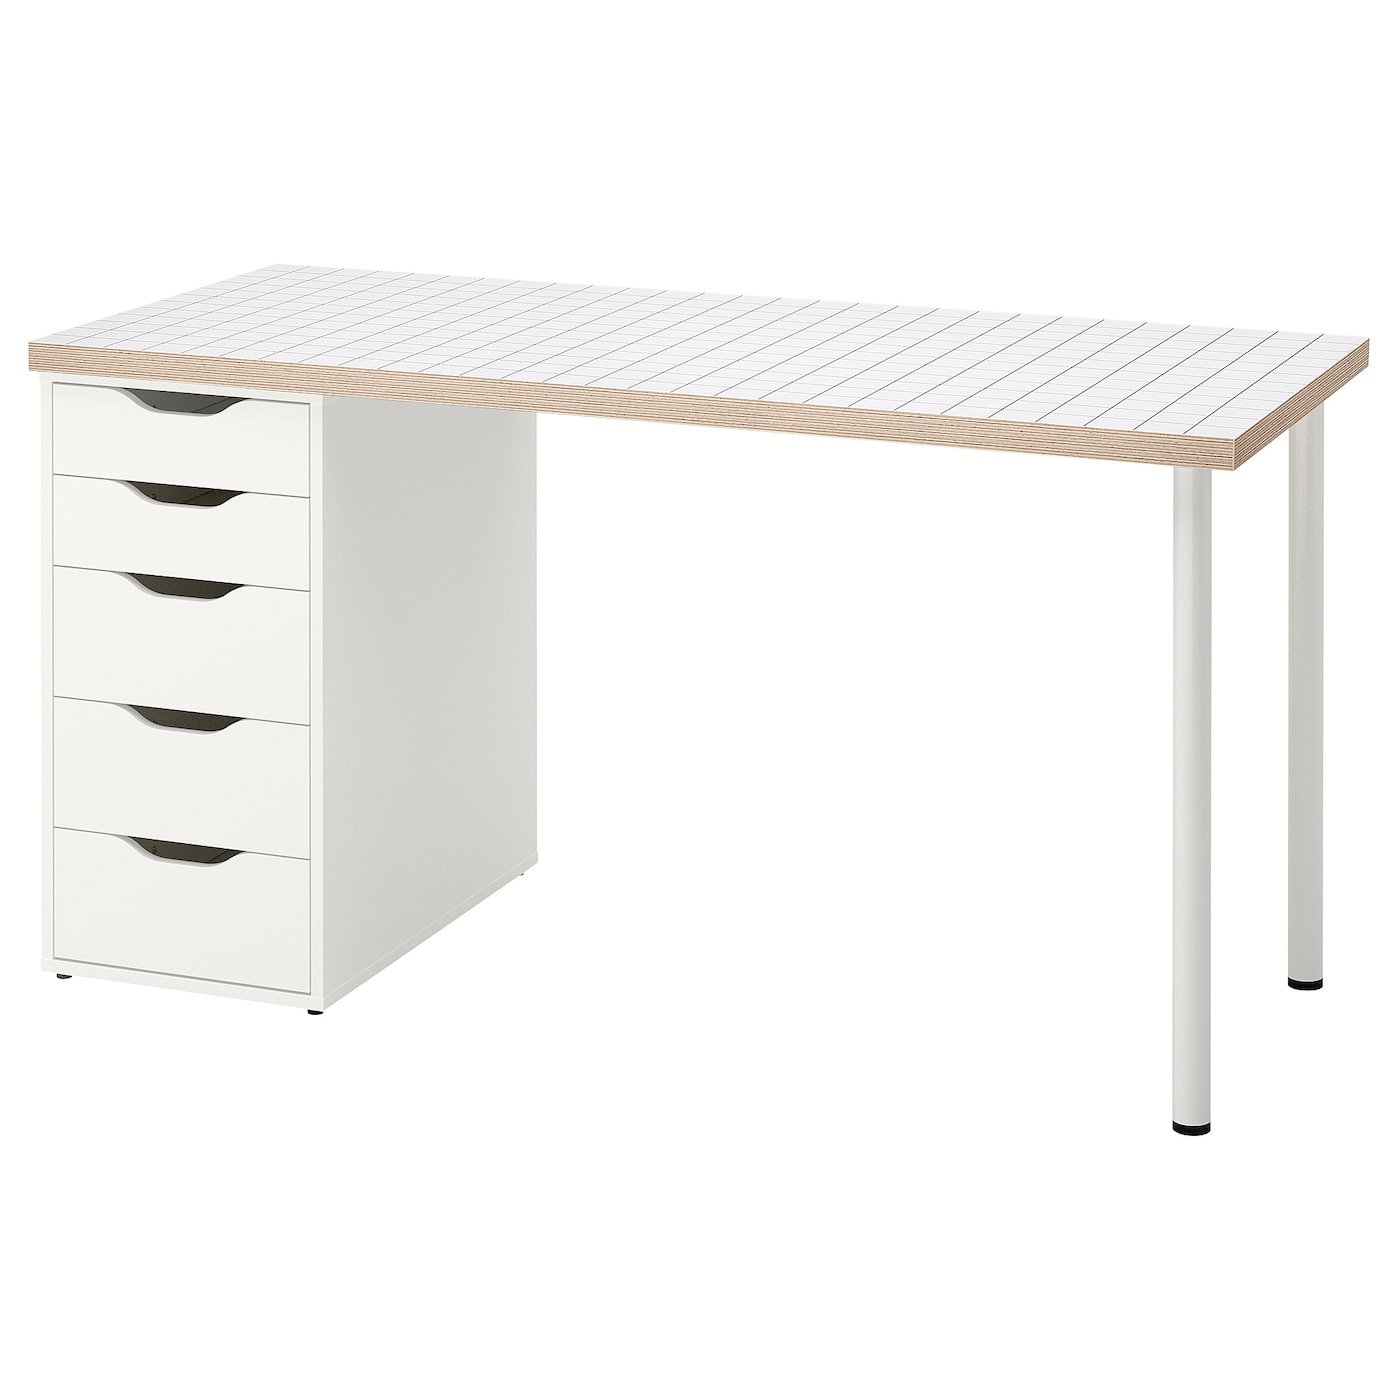 Письменный стол с ящиком - IKEA LAGKAPTEN/ALEX, 140x60 см, белый антрацит, АЛЕКС/ЛАГКАПТЕН ИКЕА